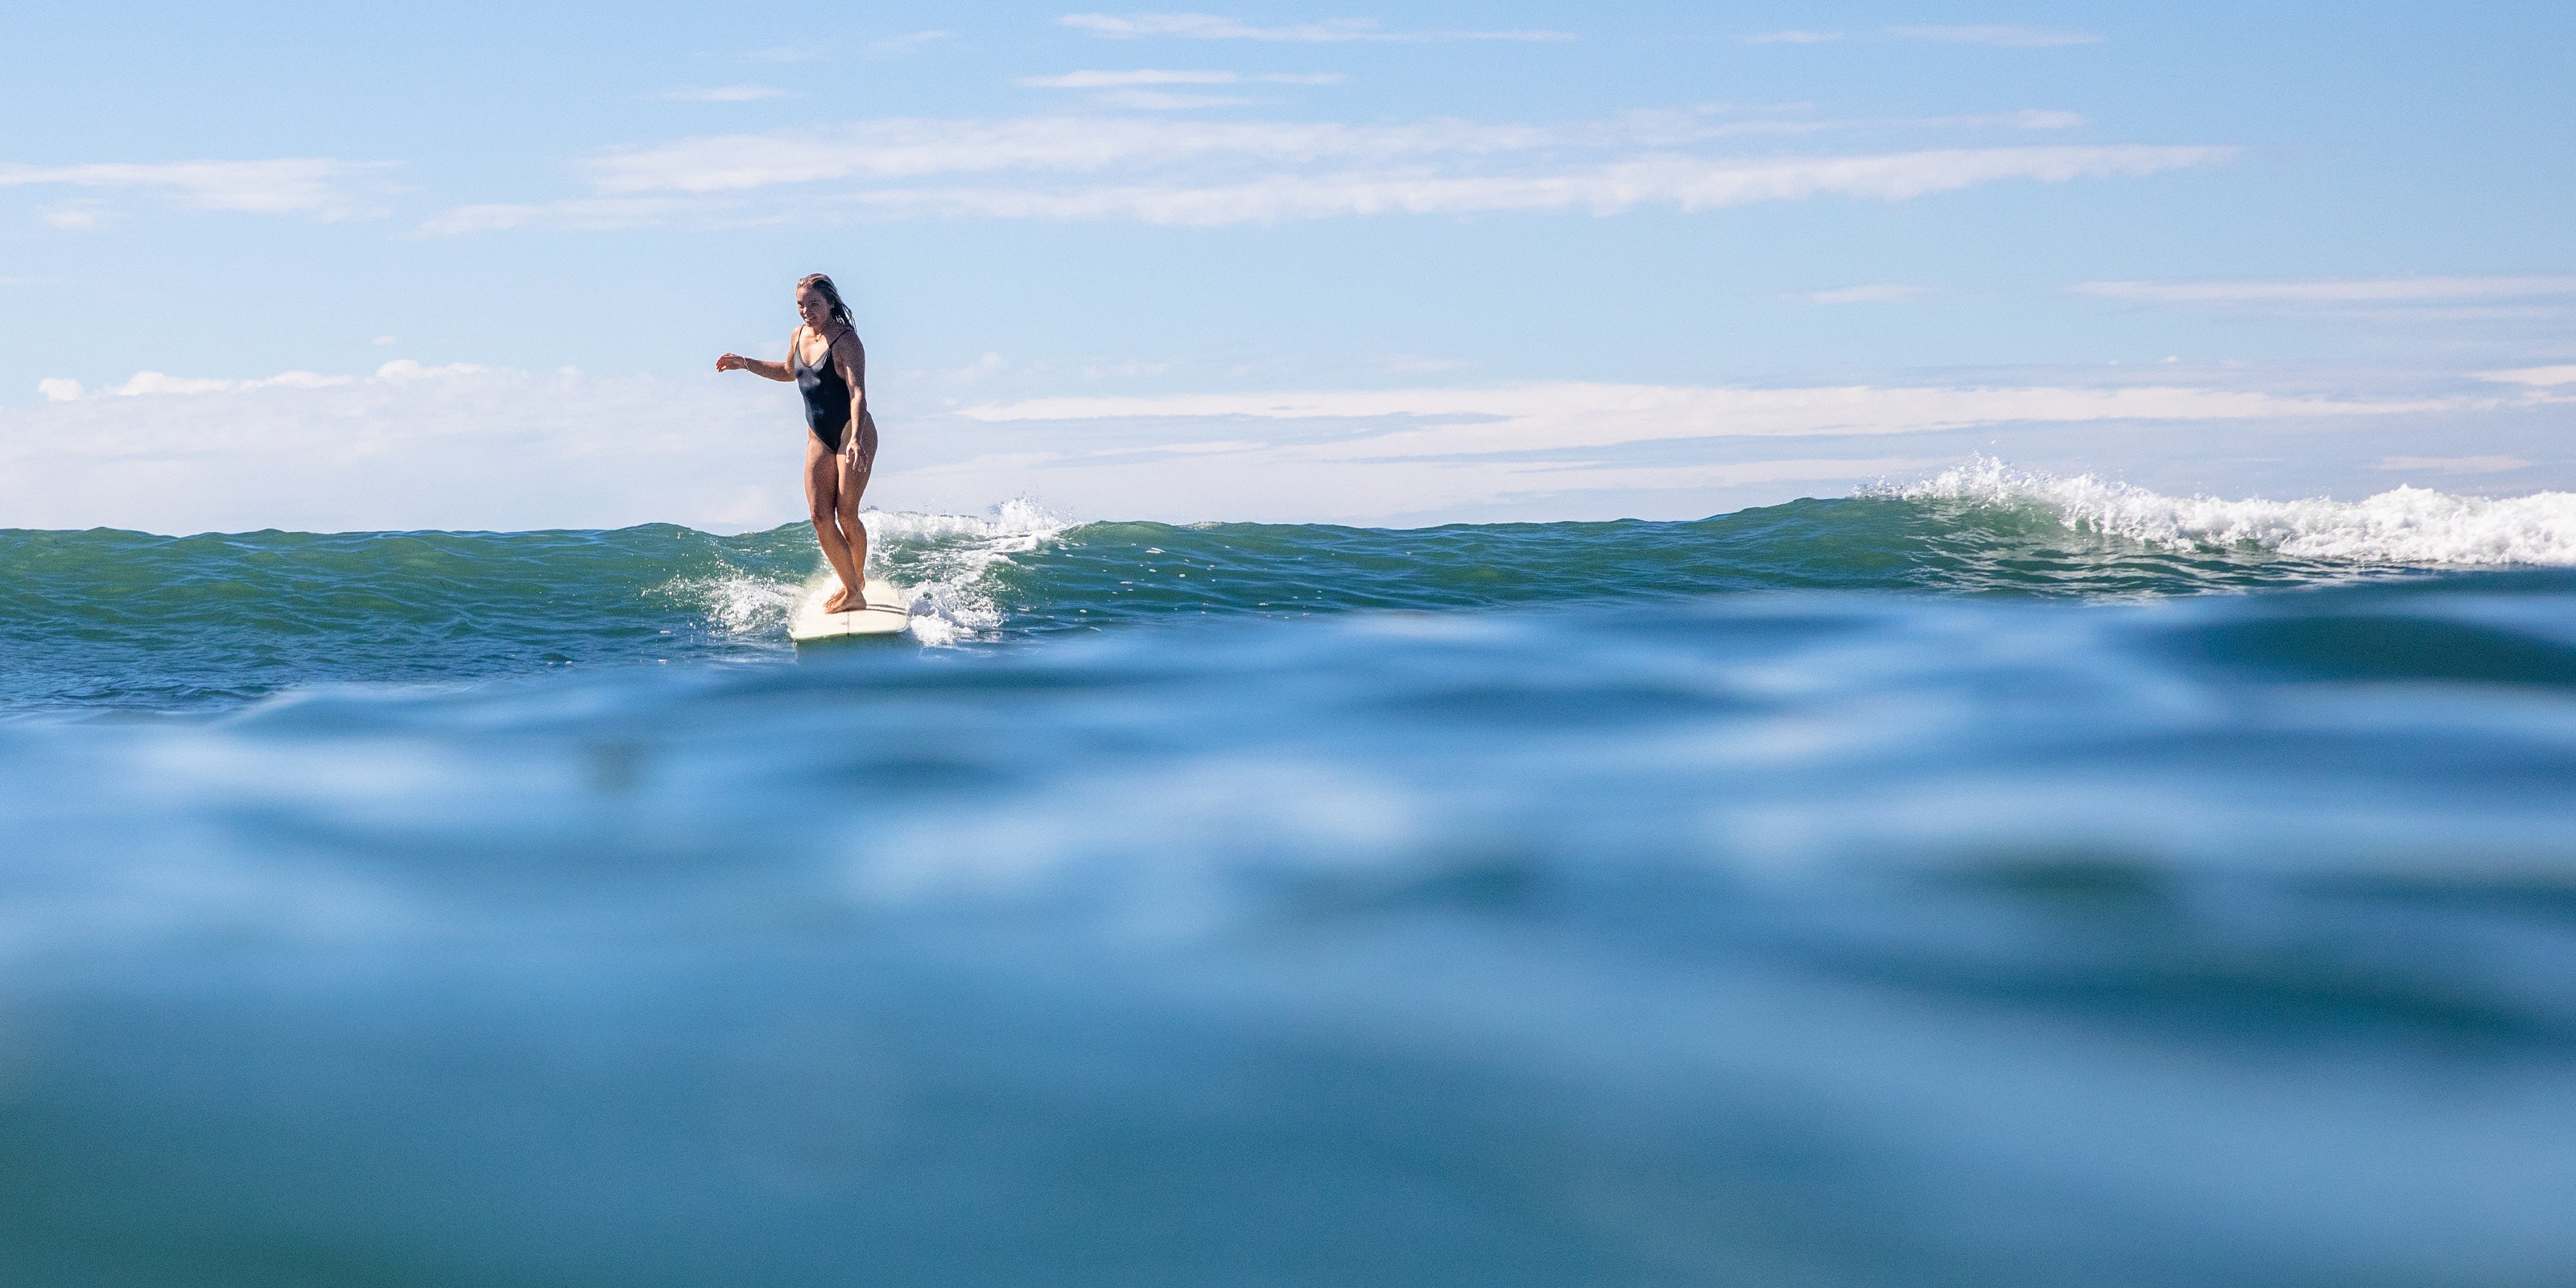 Girl surfing on her longboard surfboard in the sea in Australia.